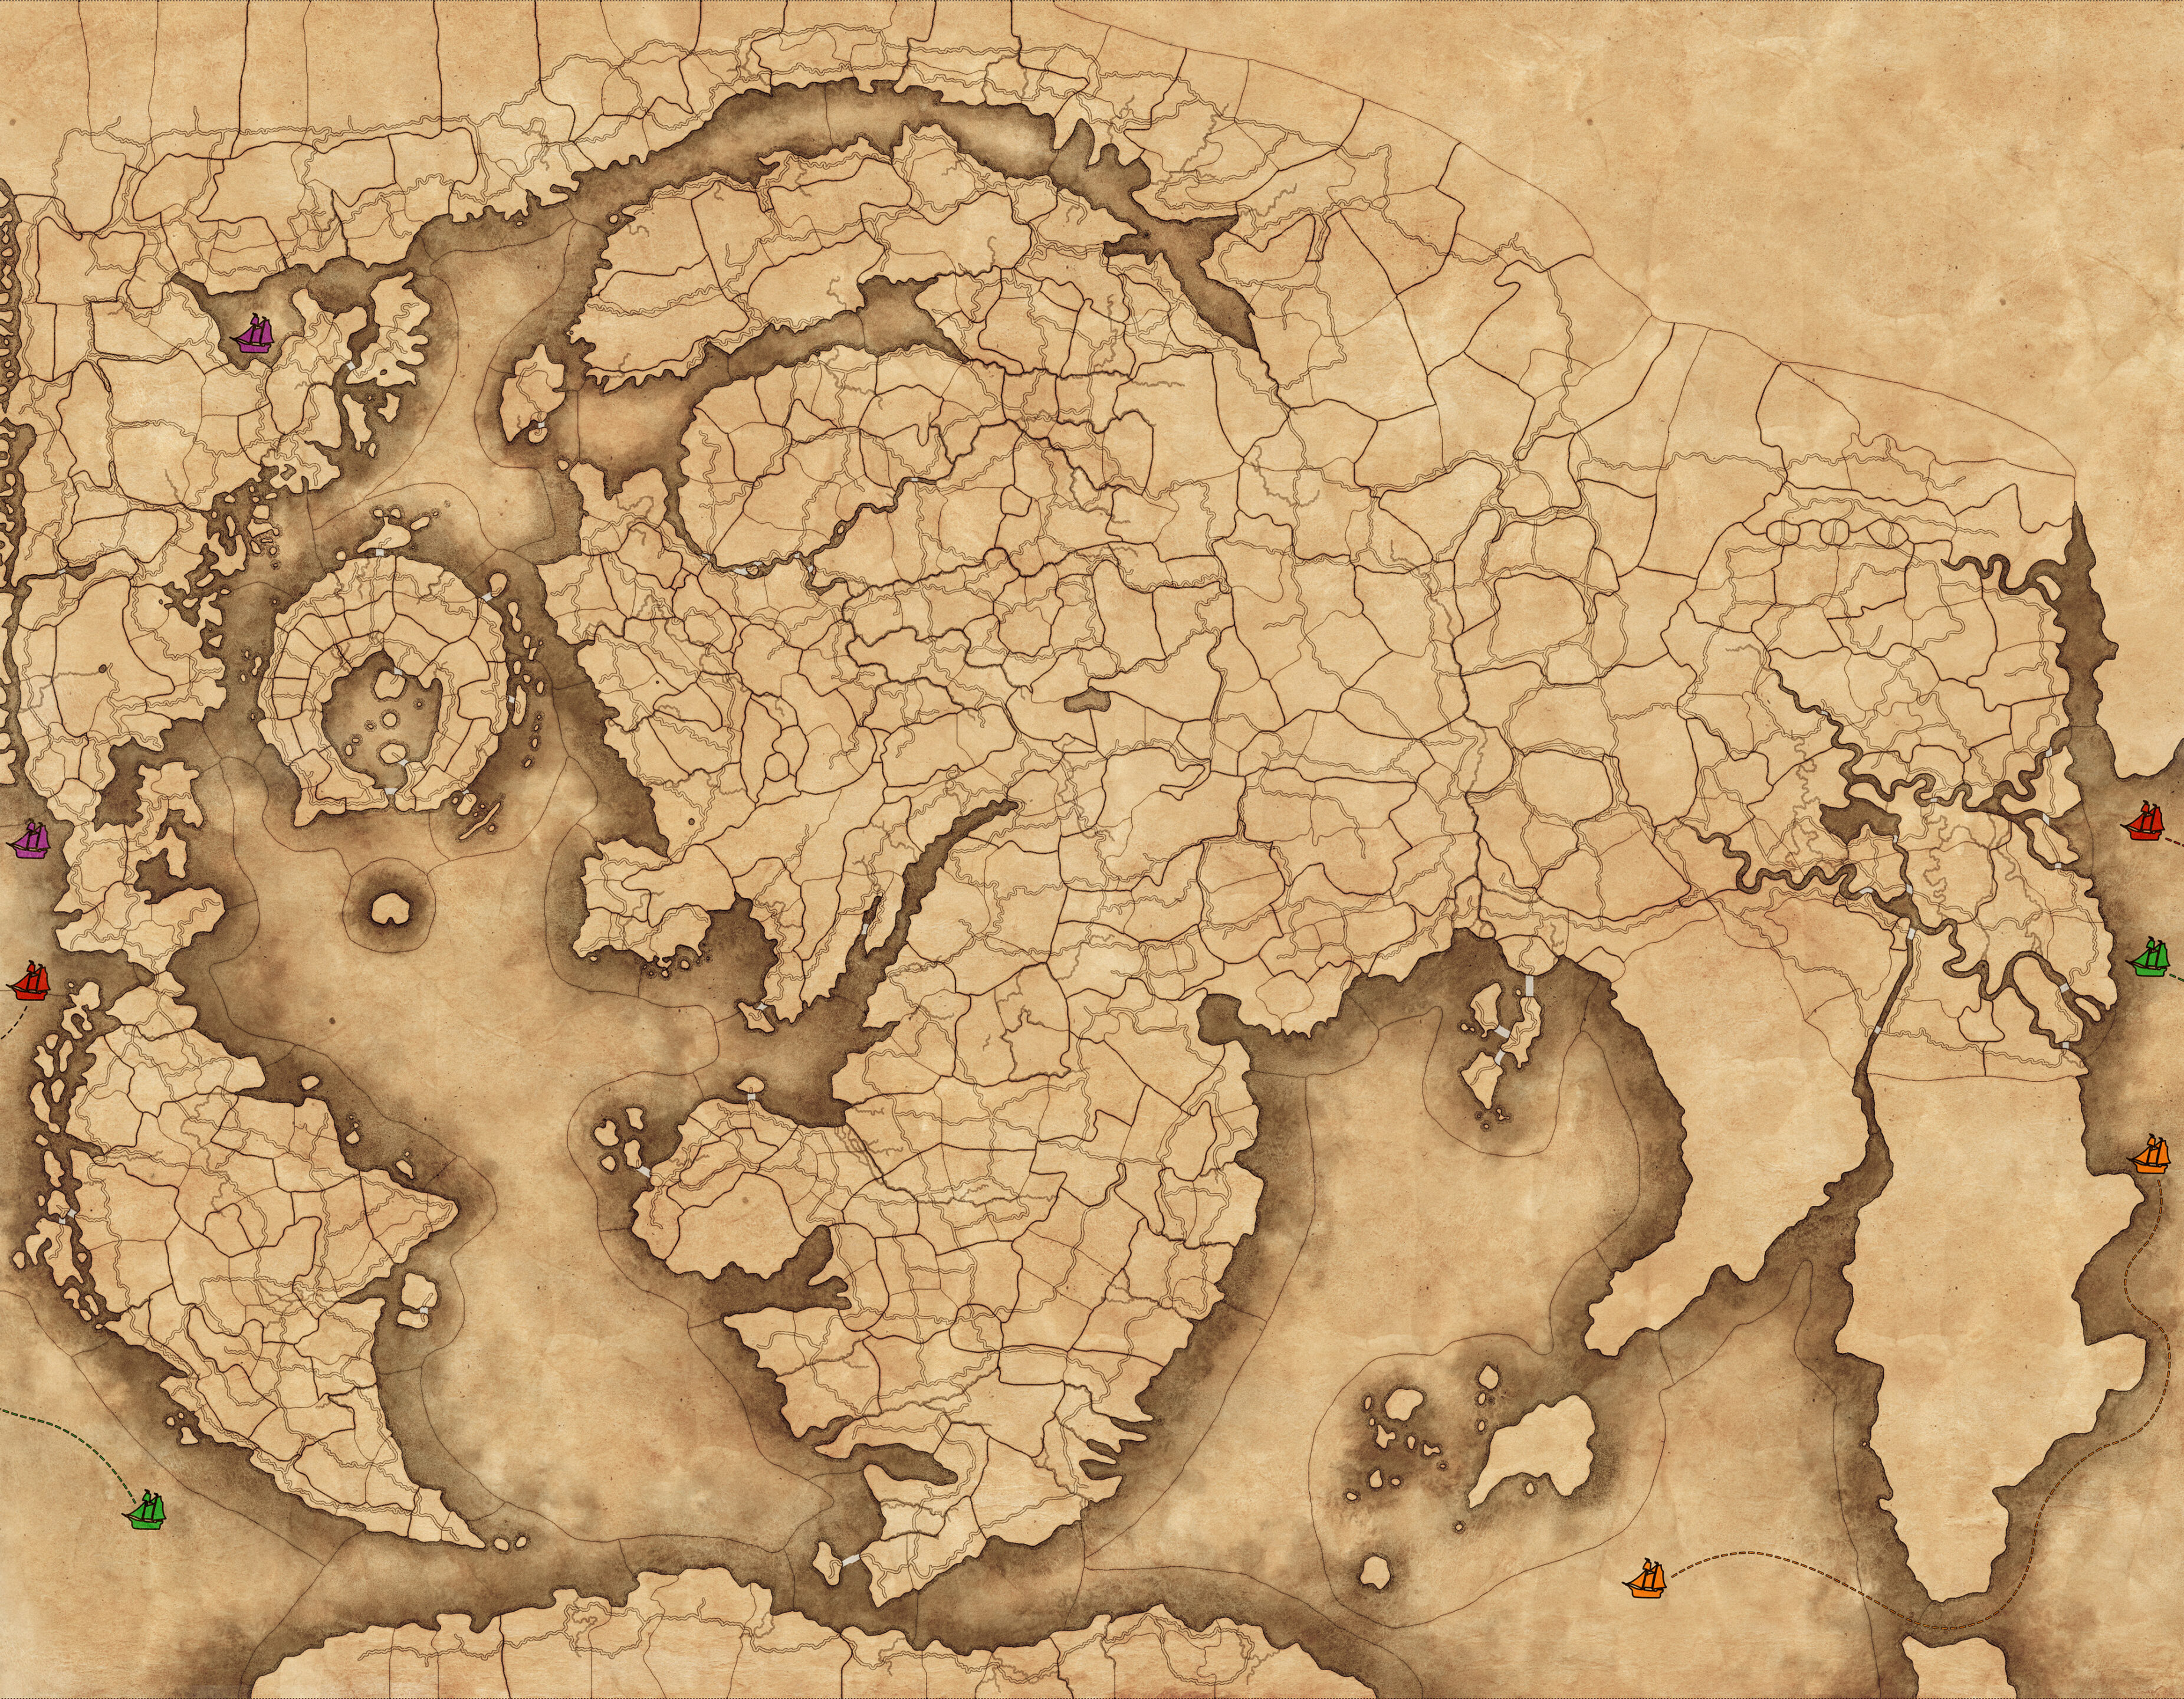 Immortal Empiresゲームモードマップの画像。世界の広範囲にわたる距離を越えるために使用できる海のレーンを表す色付きのボートアイコンを含む。